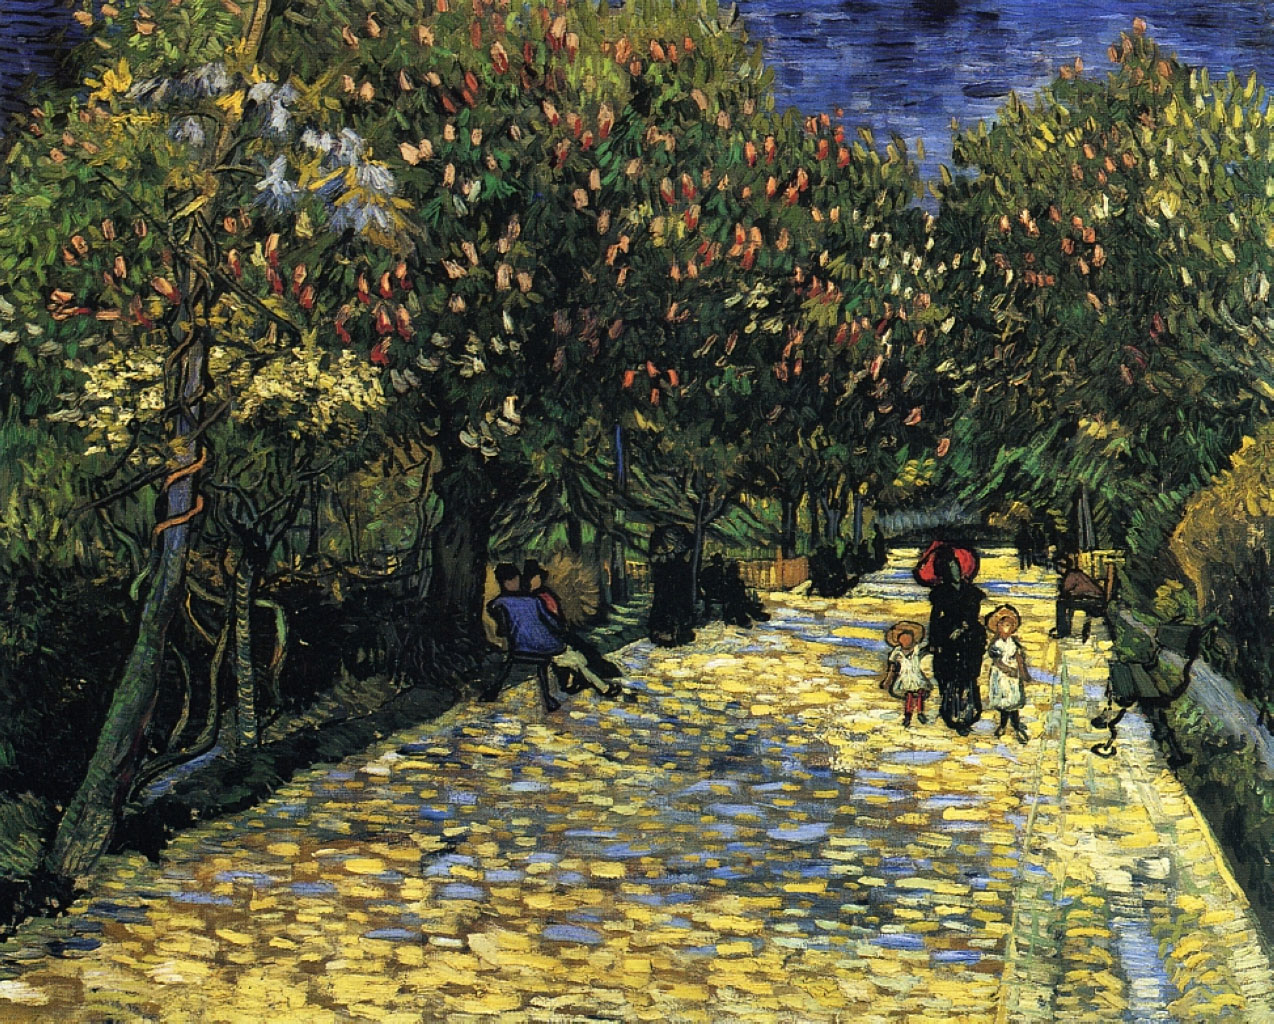 Винсент Ван Гог. "Улица с цветущими каштанами в Арле". 1889.